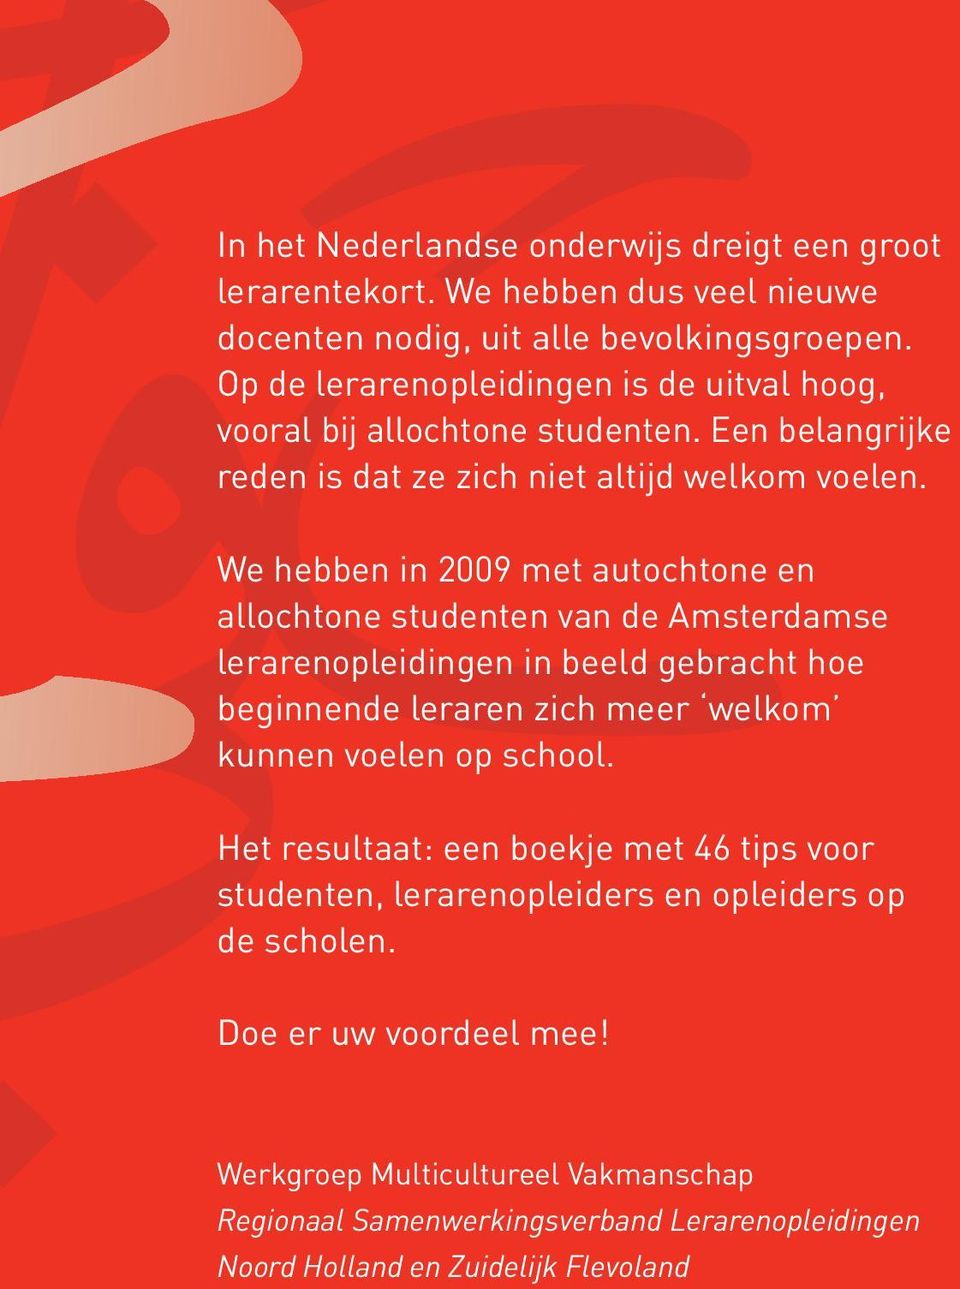 We hebben in 2009 met autochtone en allochtone studenten van de Amsterdamse lerarenopleidingen in beeld gebracht hoe beginnende leraren zich meer welkom kunnen voelen op